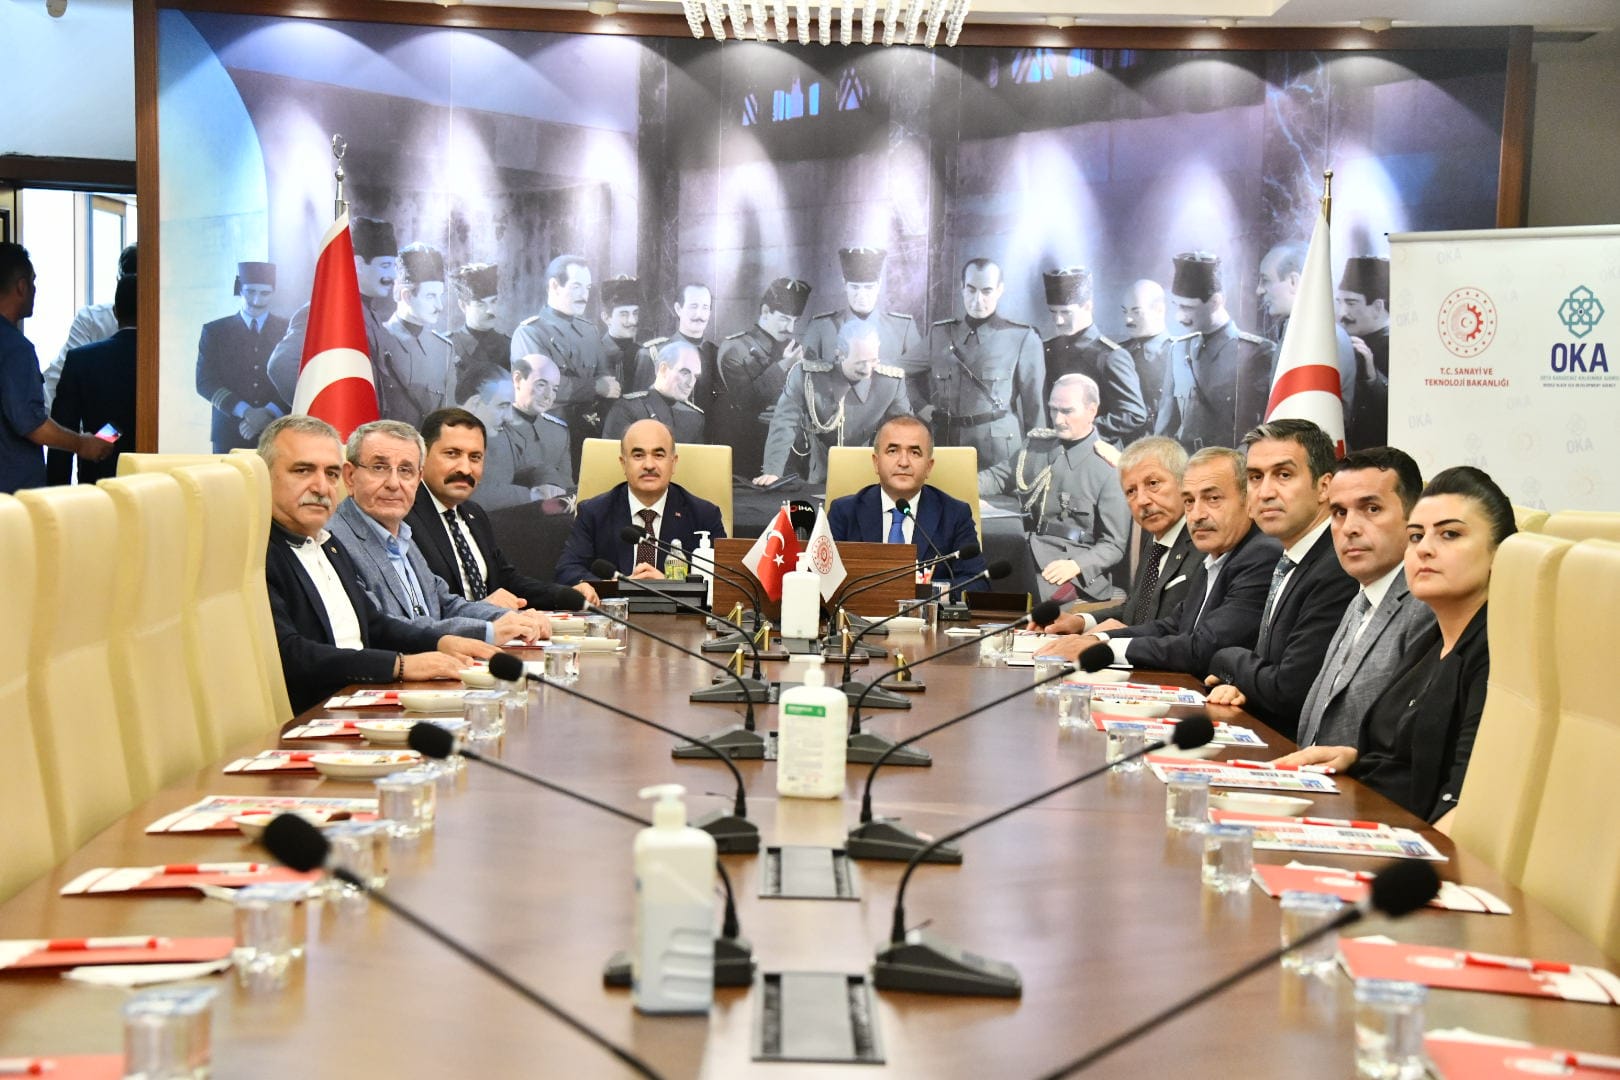 Amasya Valisi Mustafa MASATLI, Samsun’da Düzenlenen Orta Karadeniz Kalkınma Ajansı 2022 Yılı Ağustos Ayı Yönetim Kurulu Toplantısına Katıldı